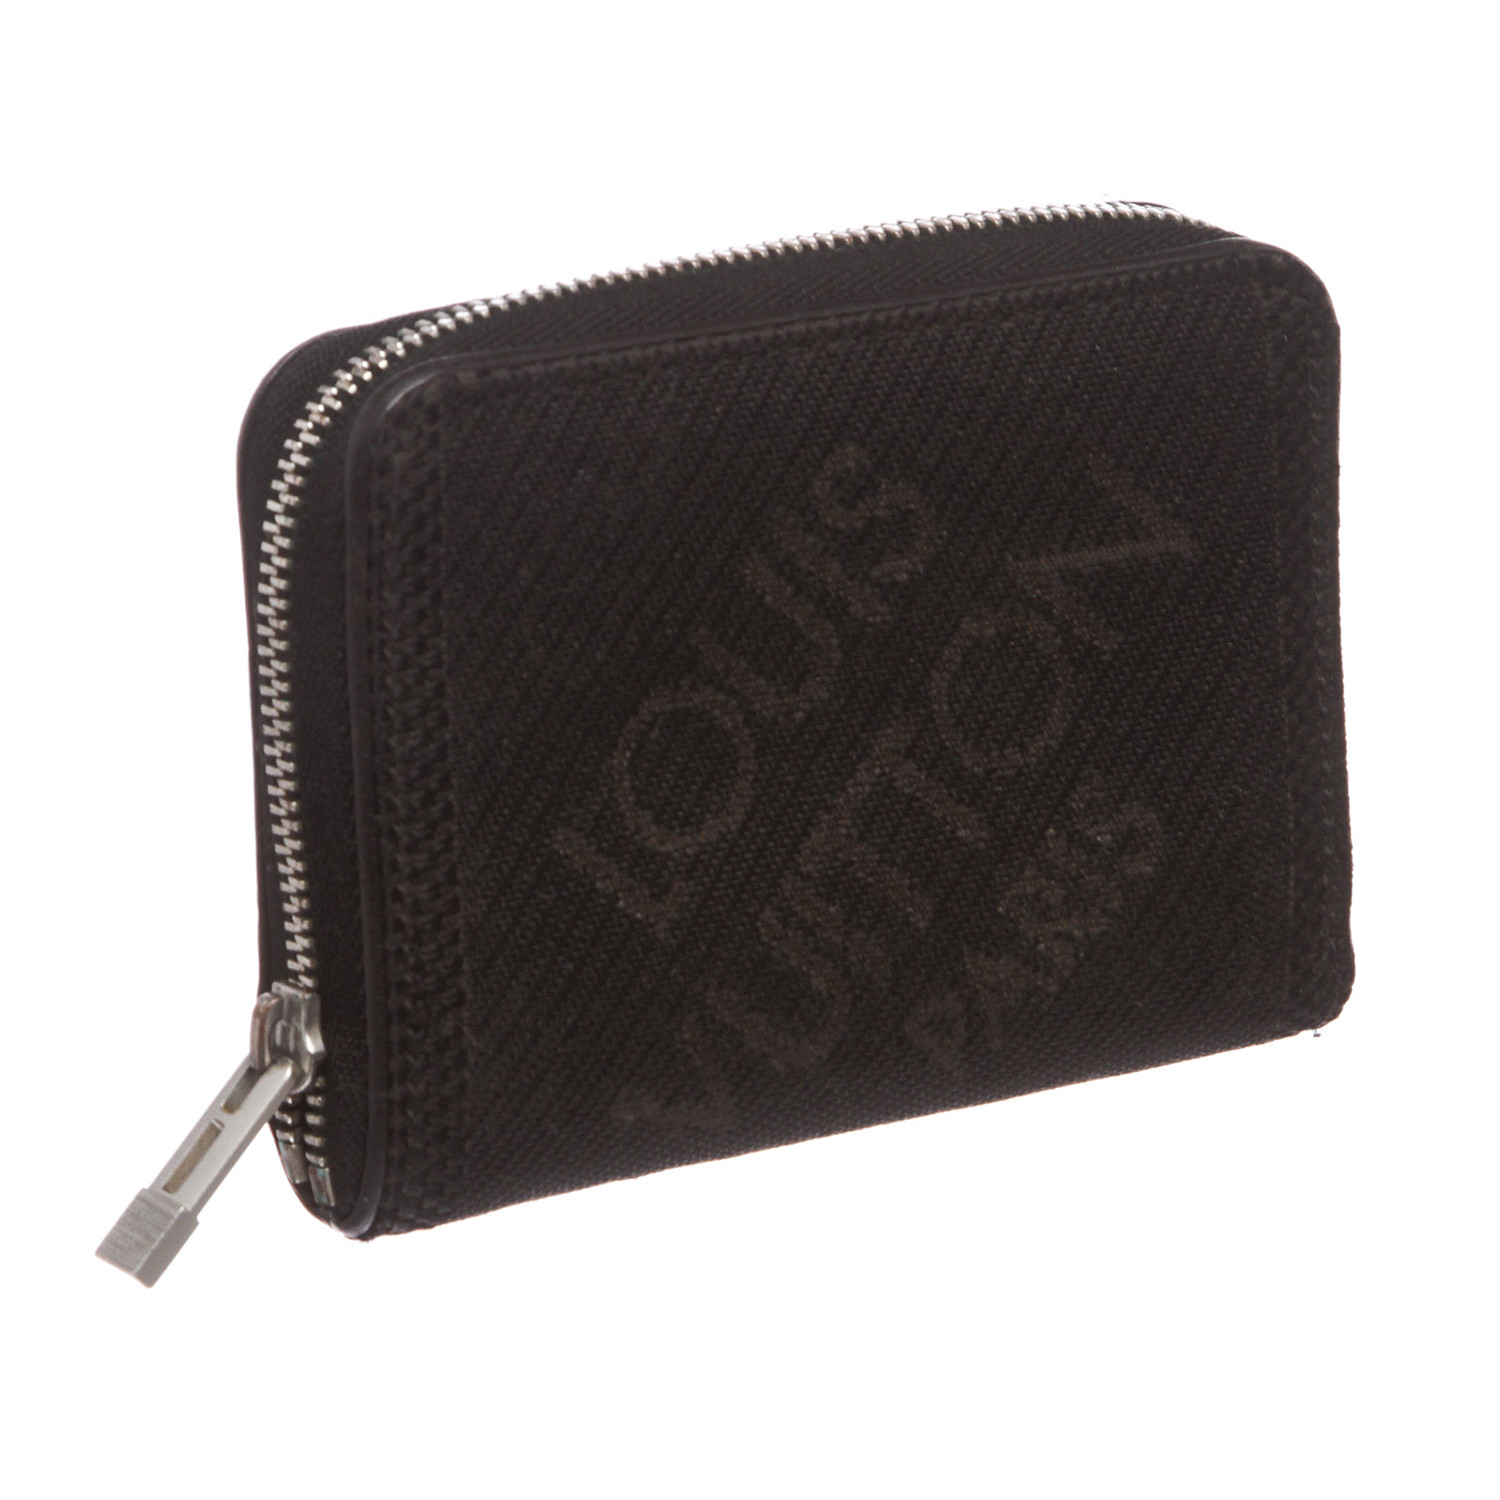 Louis Vuitton - LV Zippy Coin Purse Wallet - Black / Silver Damier